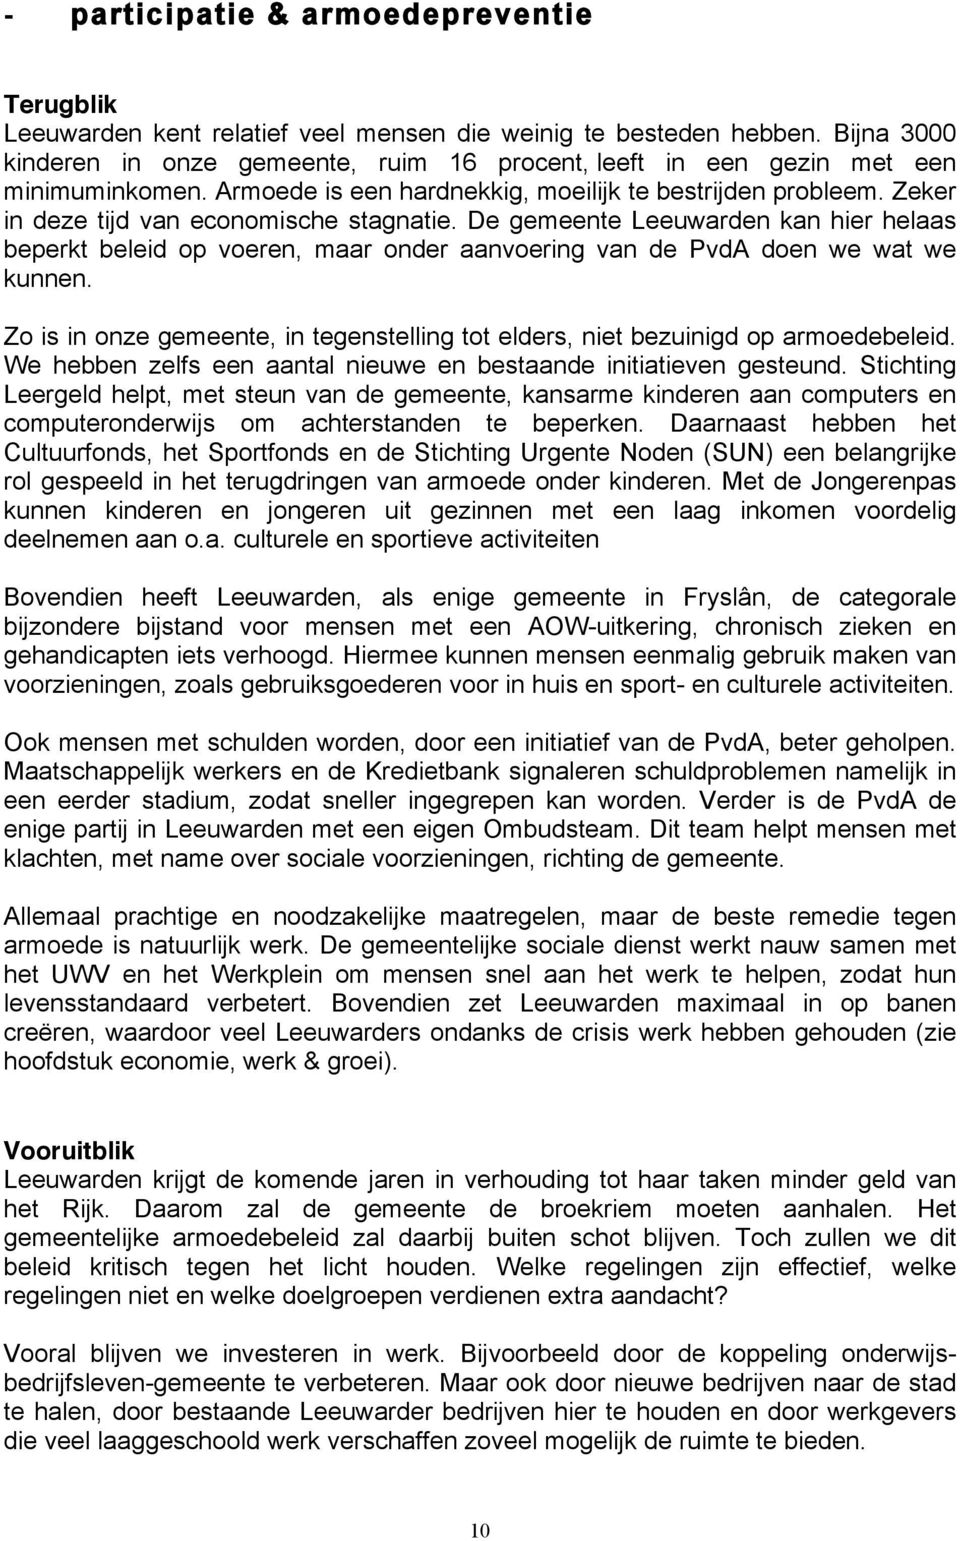 Zeker in deze tijd van economische stagnatie. De gemeente Leeuwarden kan hier helaas beperkt beleid op voeren, maar onder aanvoering van de PvdA doen we wat we kunnen.